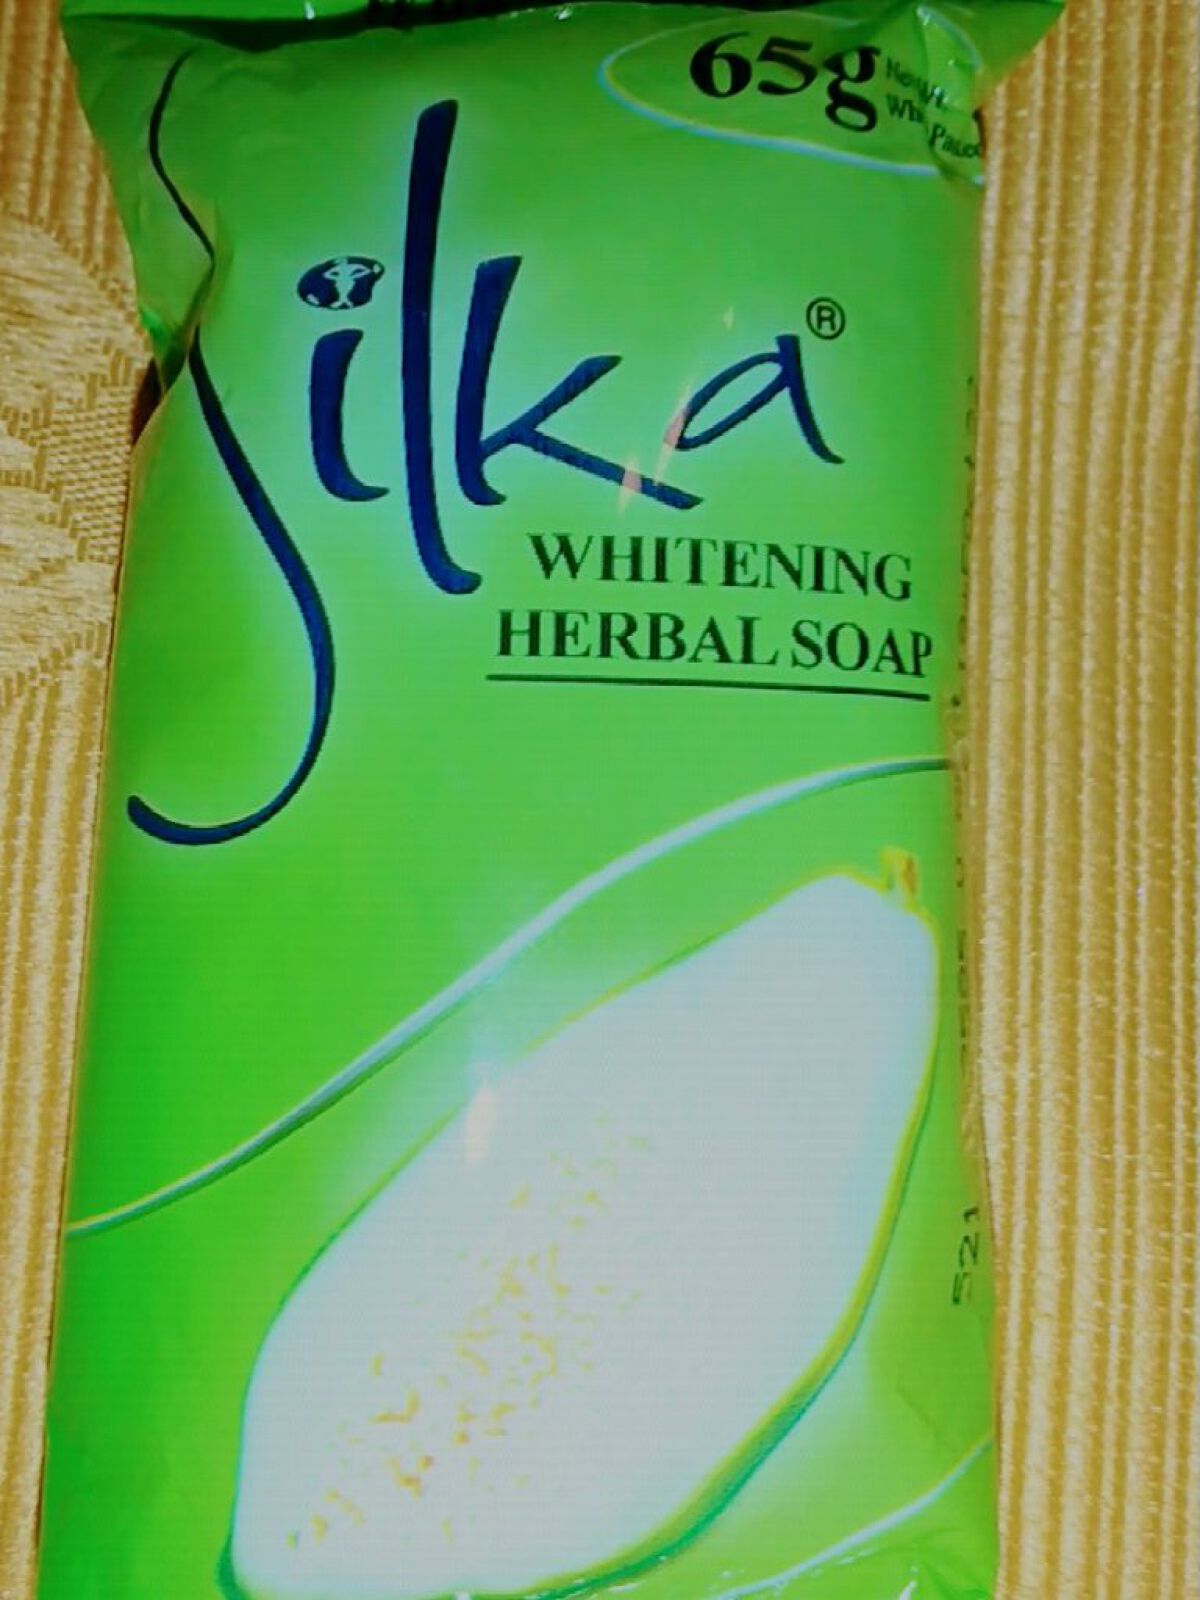 感謝価格】 フィリピンの石鹸 Silka パパイヤ 65g 6個 送料無料クリックポスト